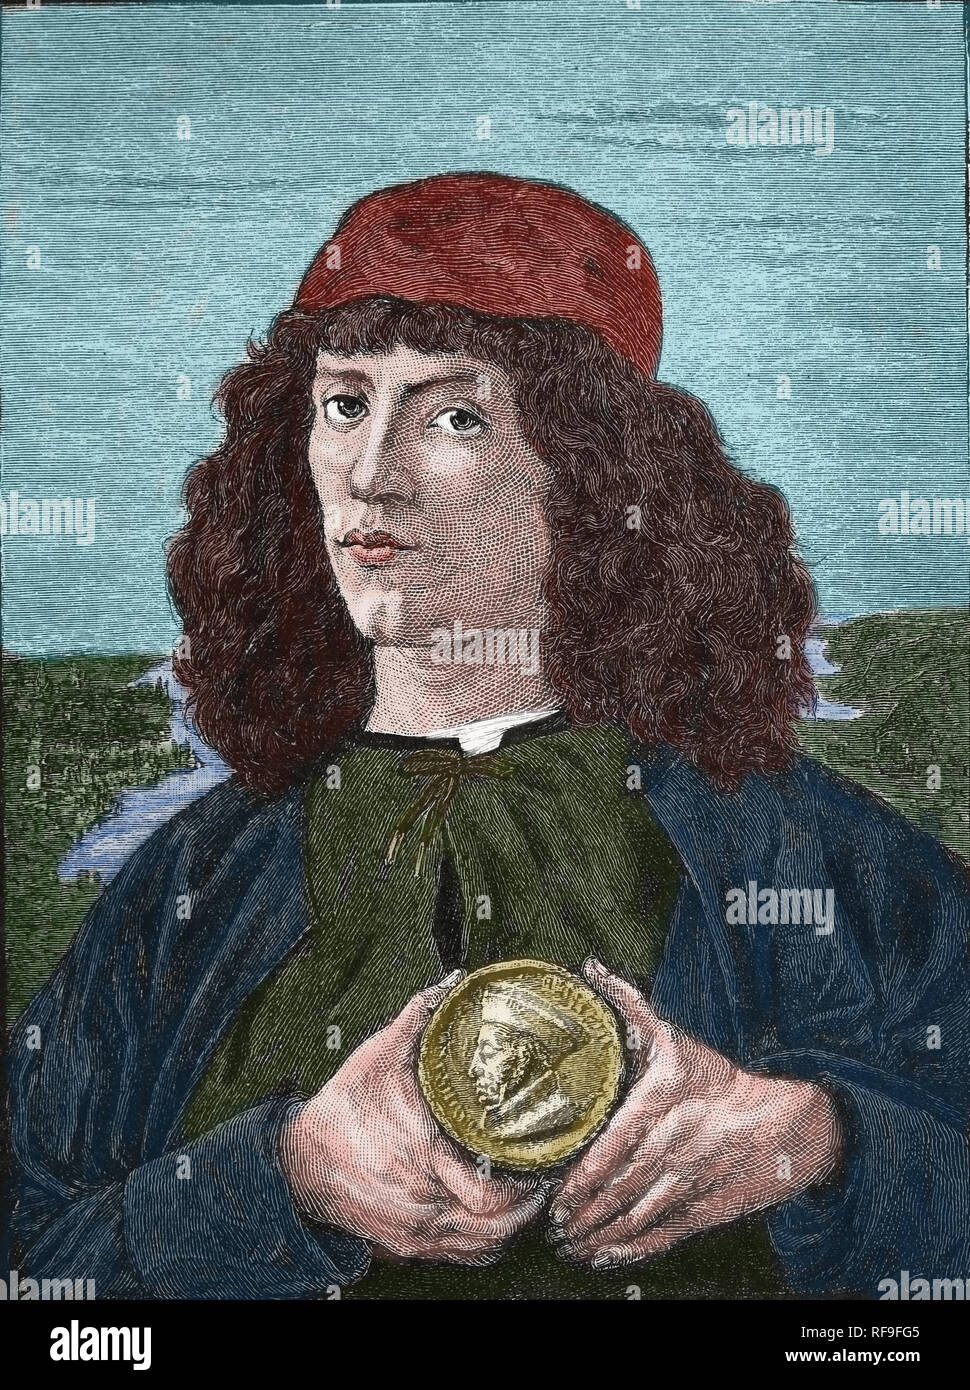 Porträt eines Mannes mit einer Medaille von Cosimo dem Älteren, 16. Jahrhundert. Gemälde von Sandro Botticelli. Kopie einer Gravur. Stockfoto